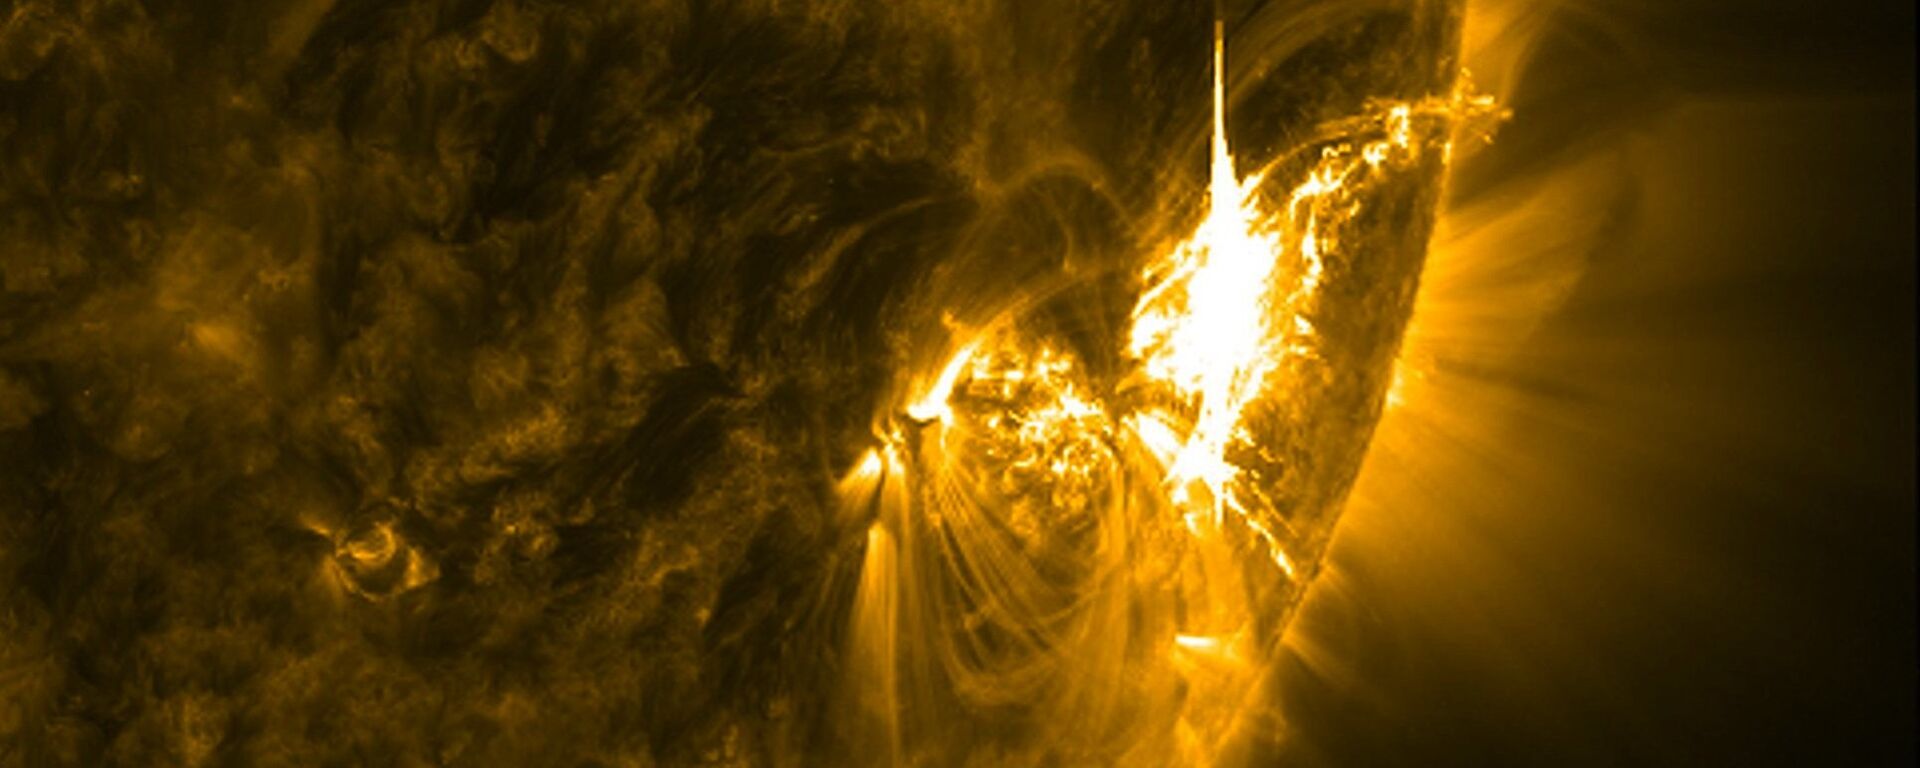 გეომაგნიტური ქარიშხალი მზეზე - Sputnik საქართველო, 1920, 13.04.2018